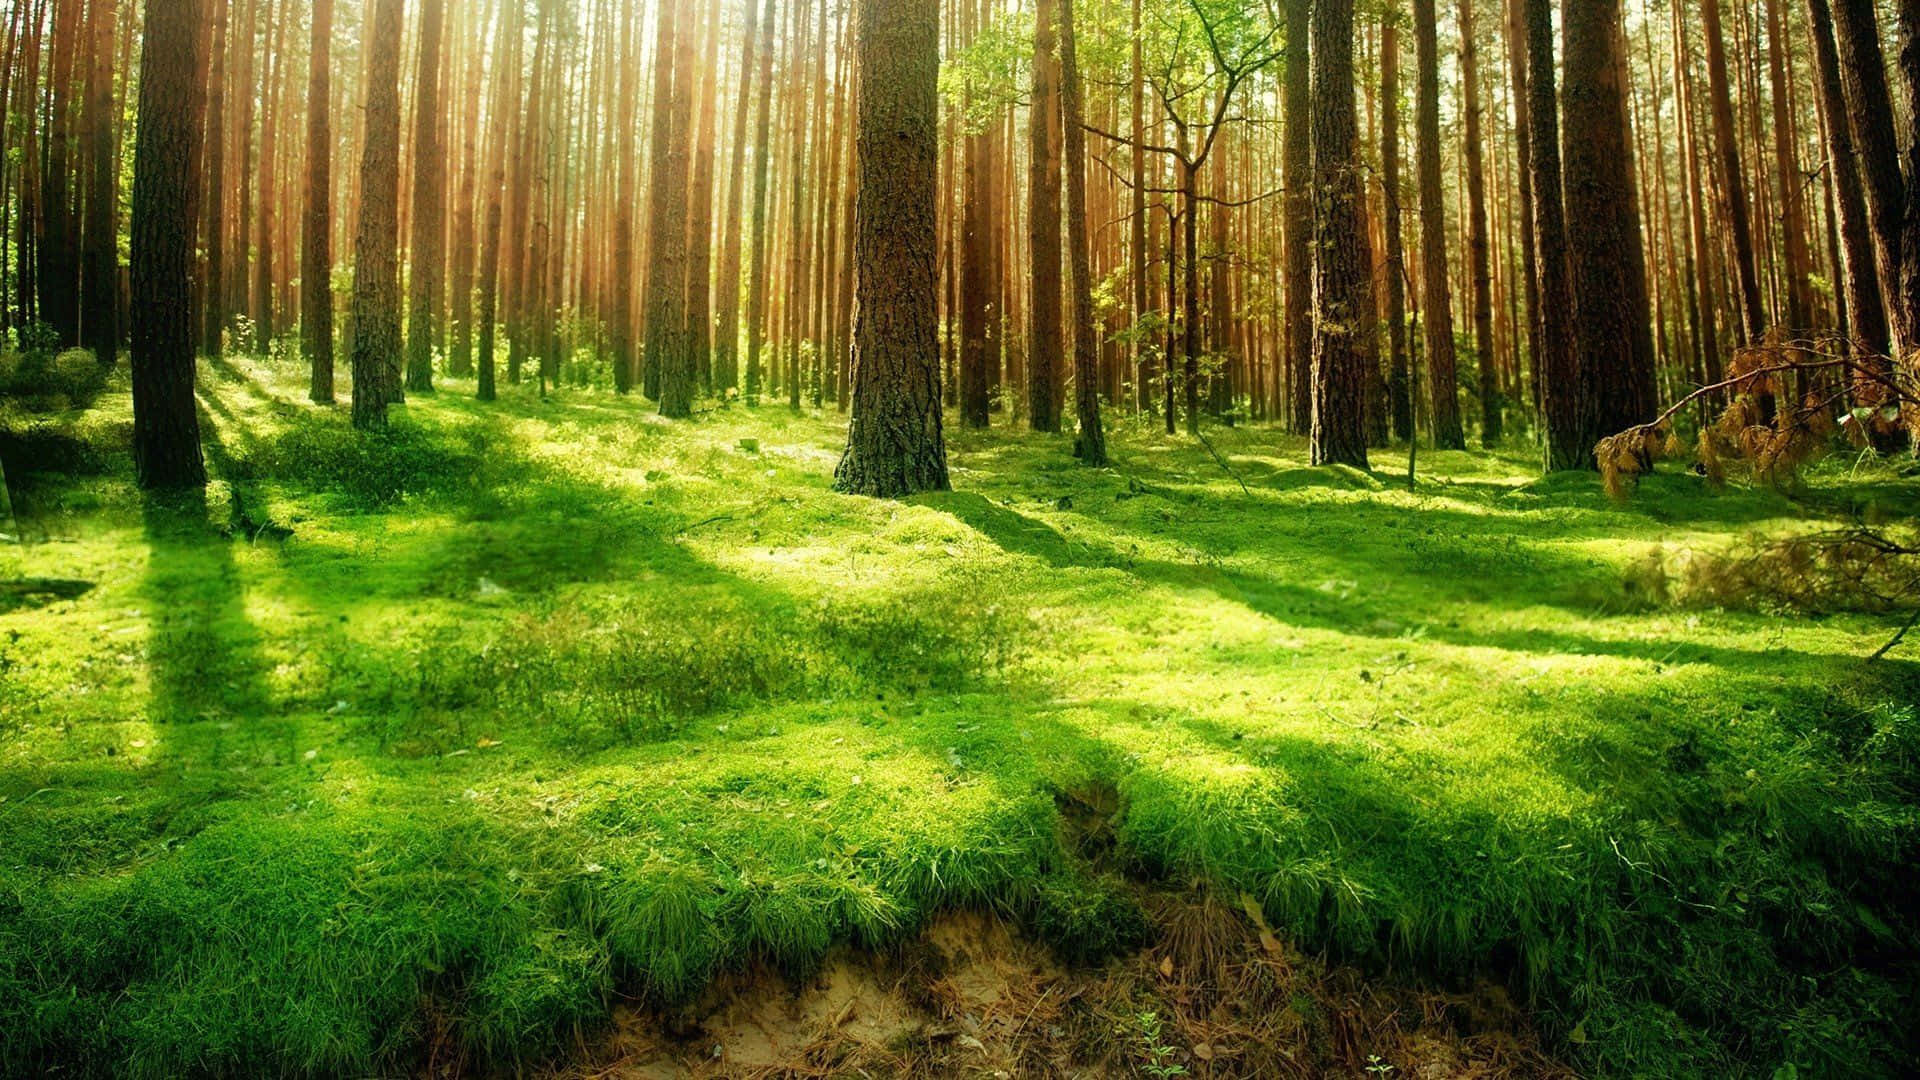 Bildlebhafte Tropische Waldlandschaft In Schimmerndem Grün Wallpaper